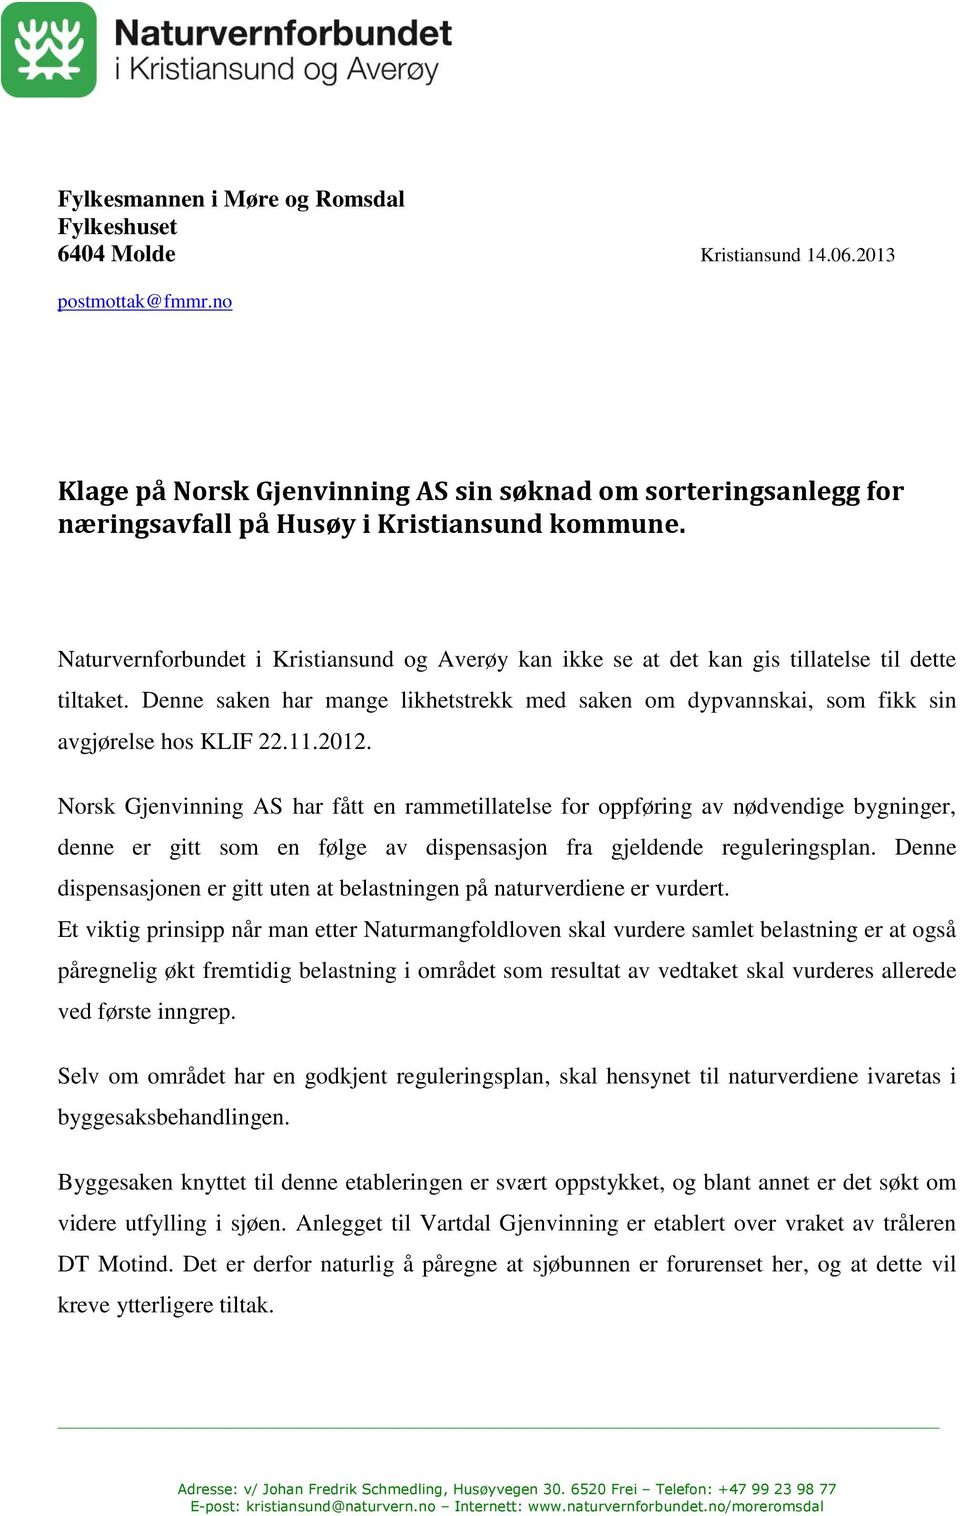 Naturvernforbundet i Kristiansund og Averøy kan ikke se at det kan gis tillatelse til dette tiltaket. Denne saken har mange likhetstrekk med saken om dypvannskai, som fikk sin avgjørelse hos KLIF 22.